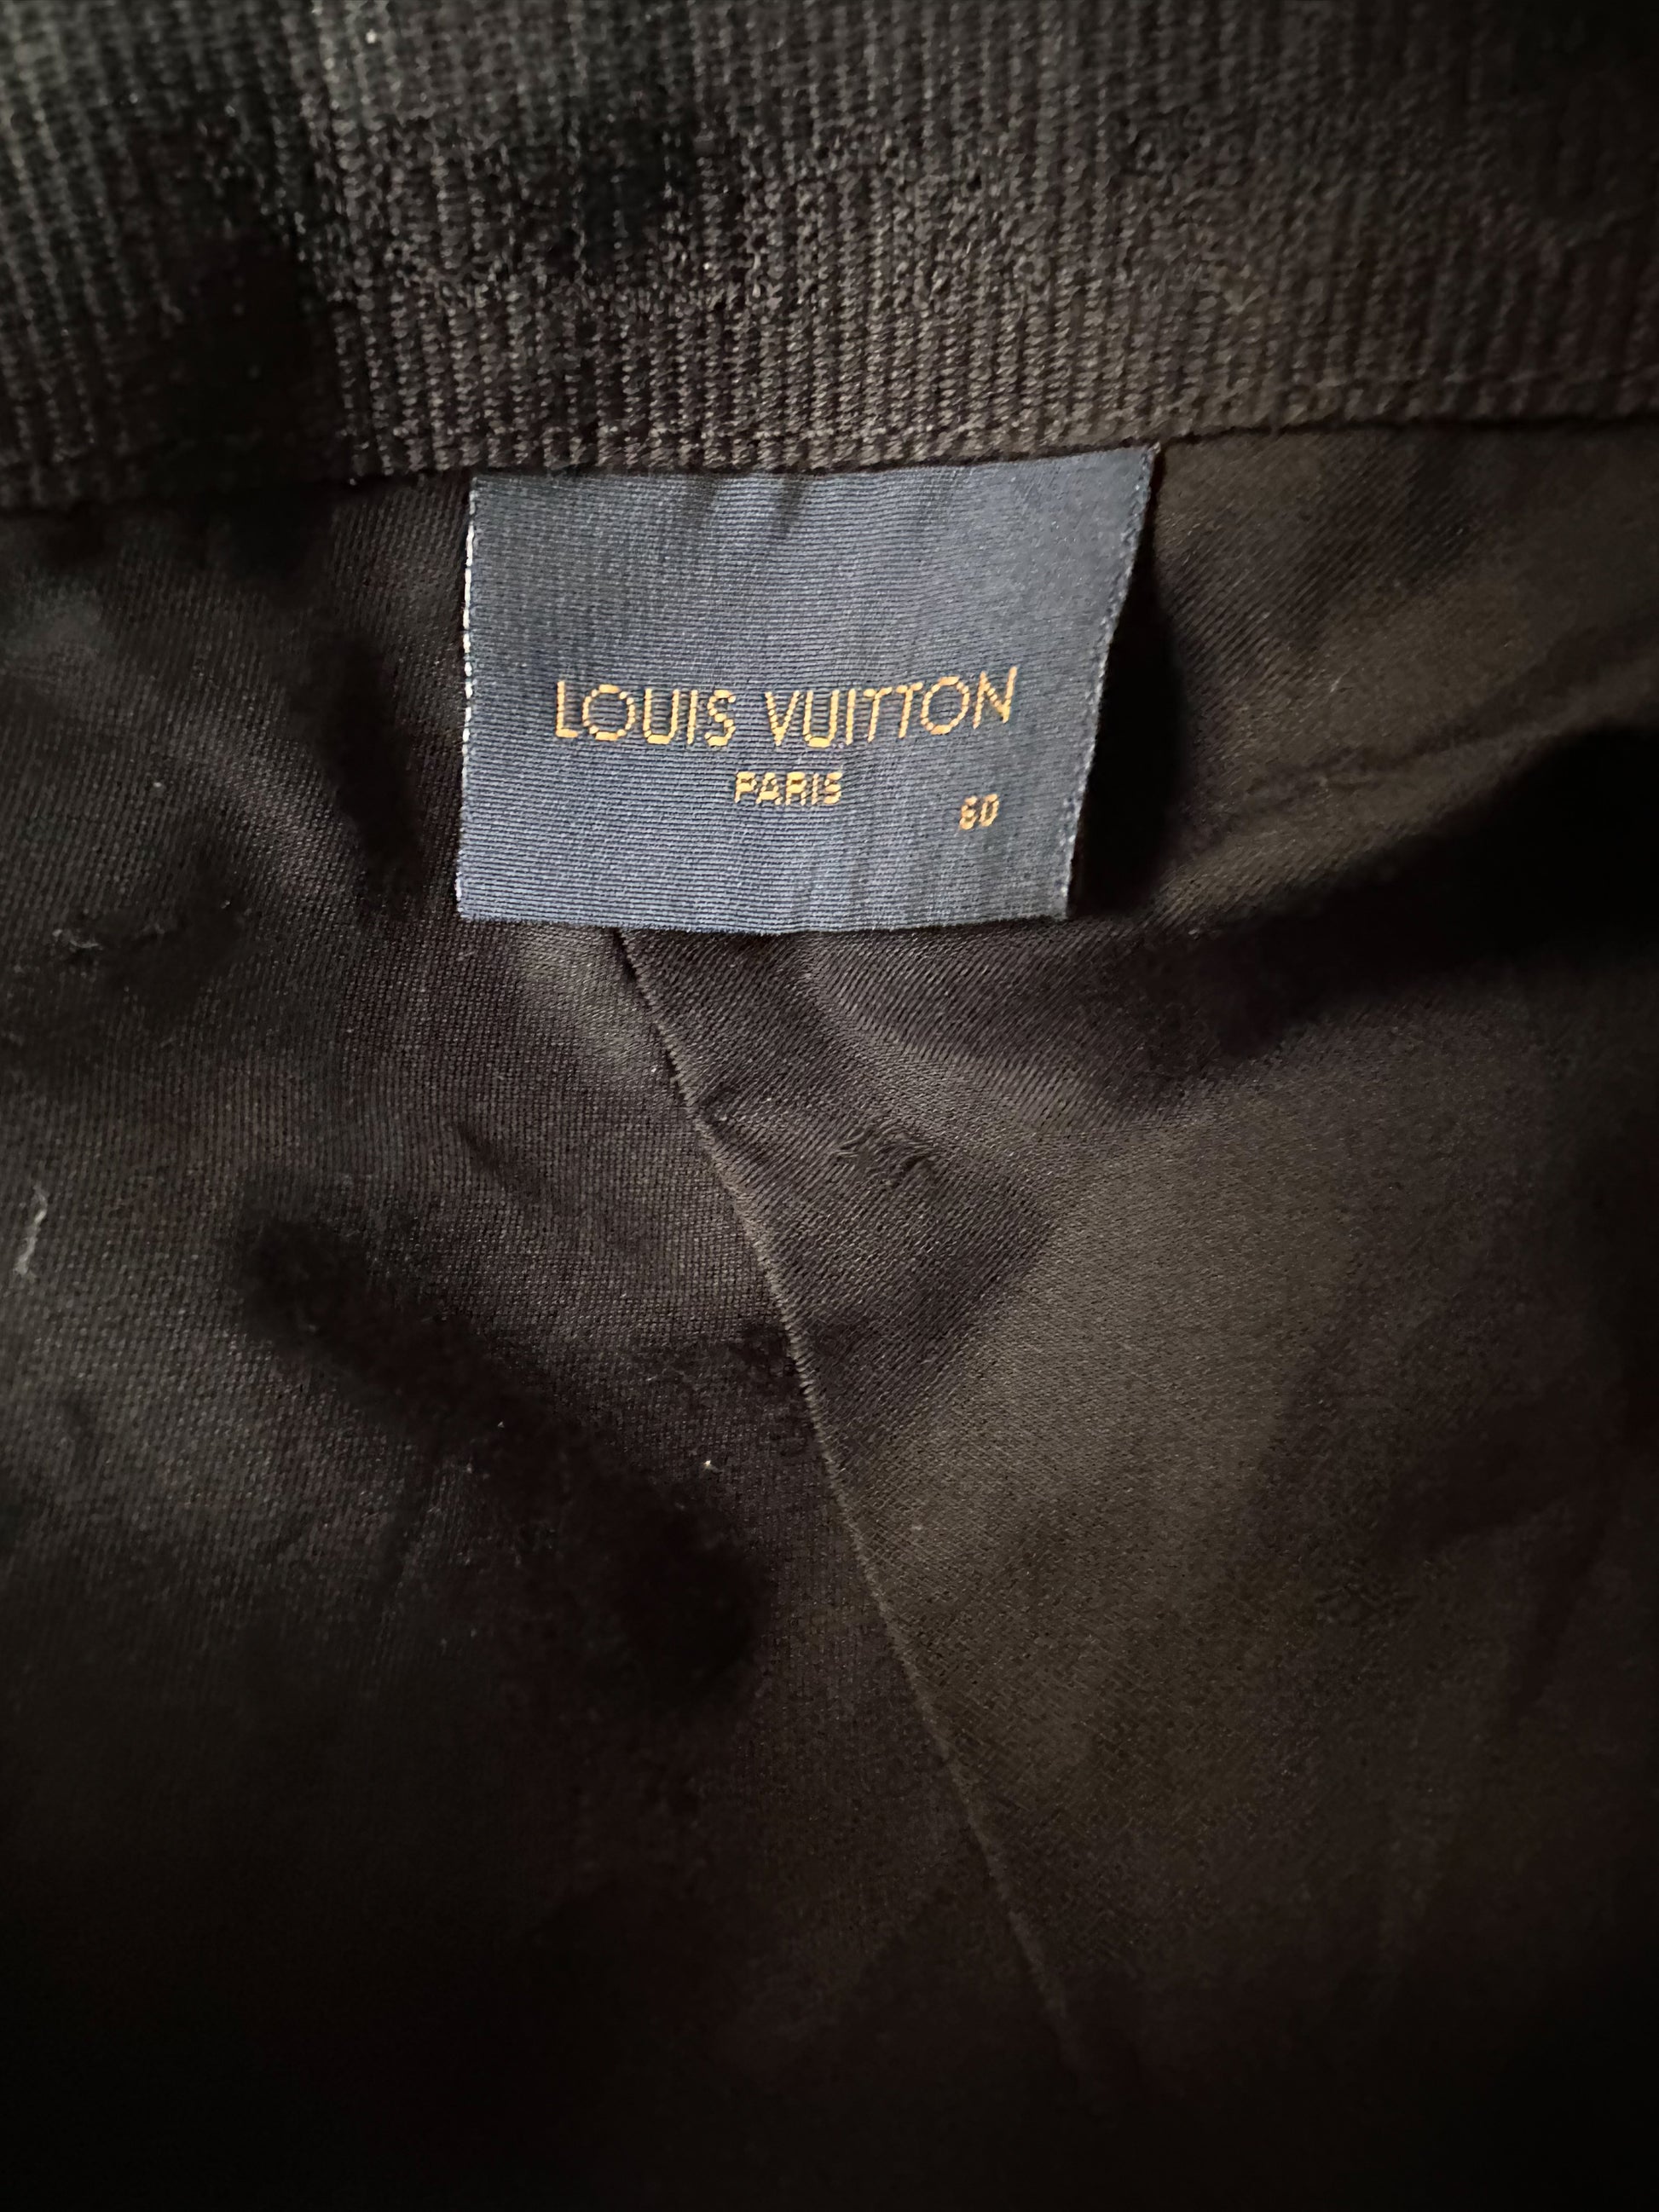 LOUIS VUITTON Monogram Essential Cap Black Cotton. Size 60